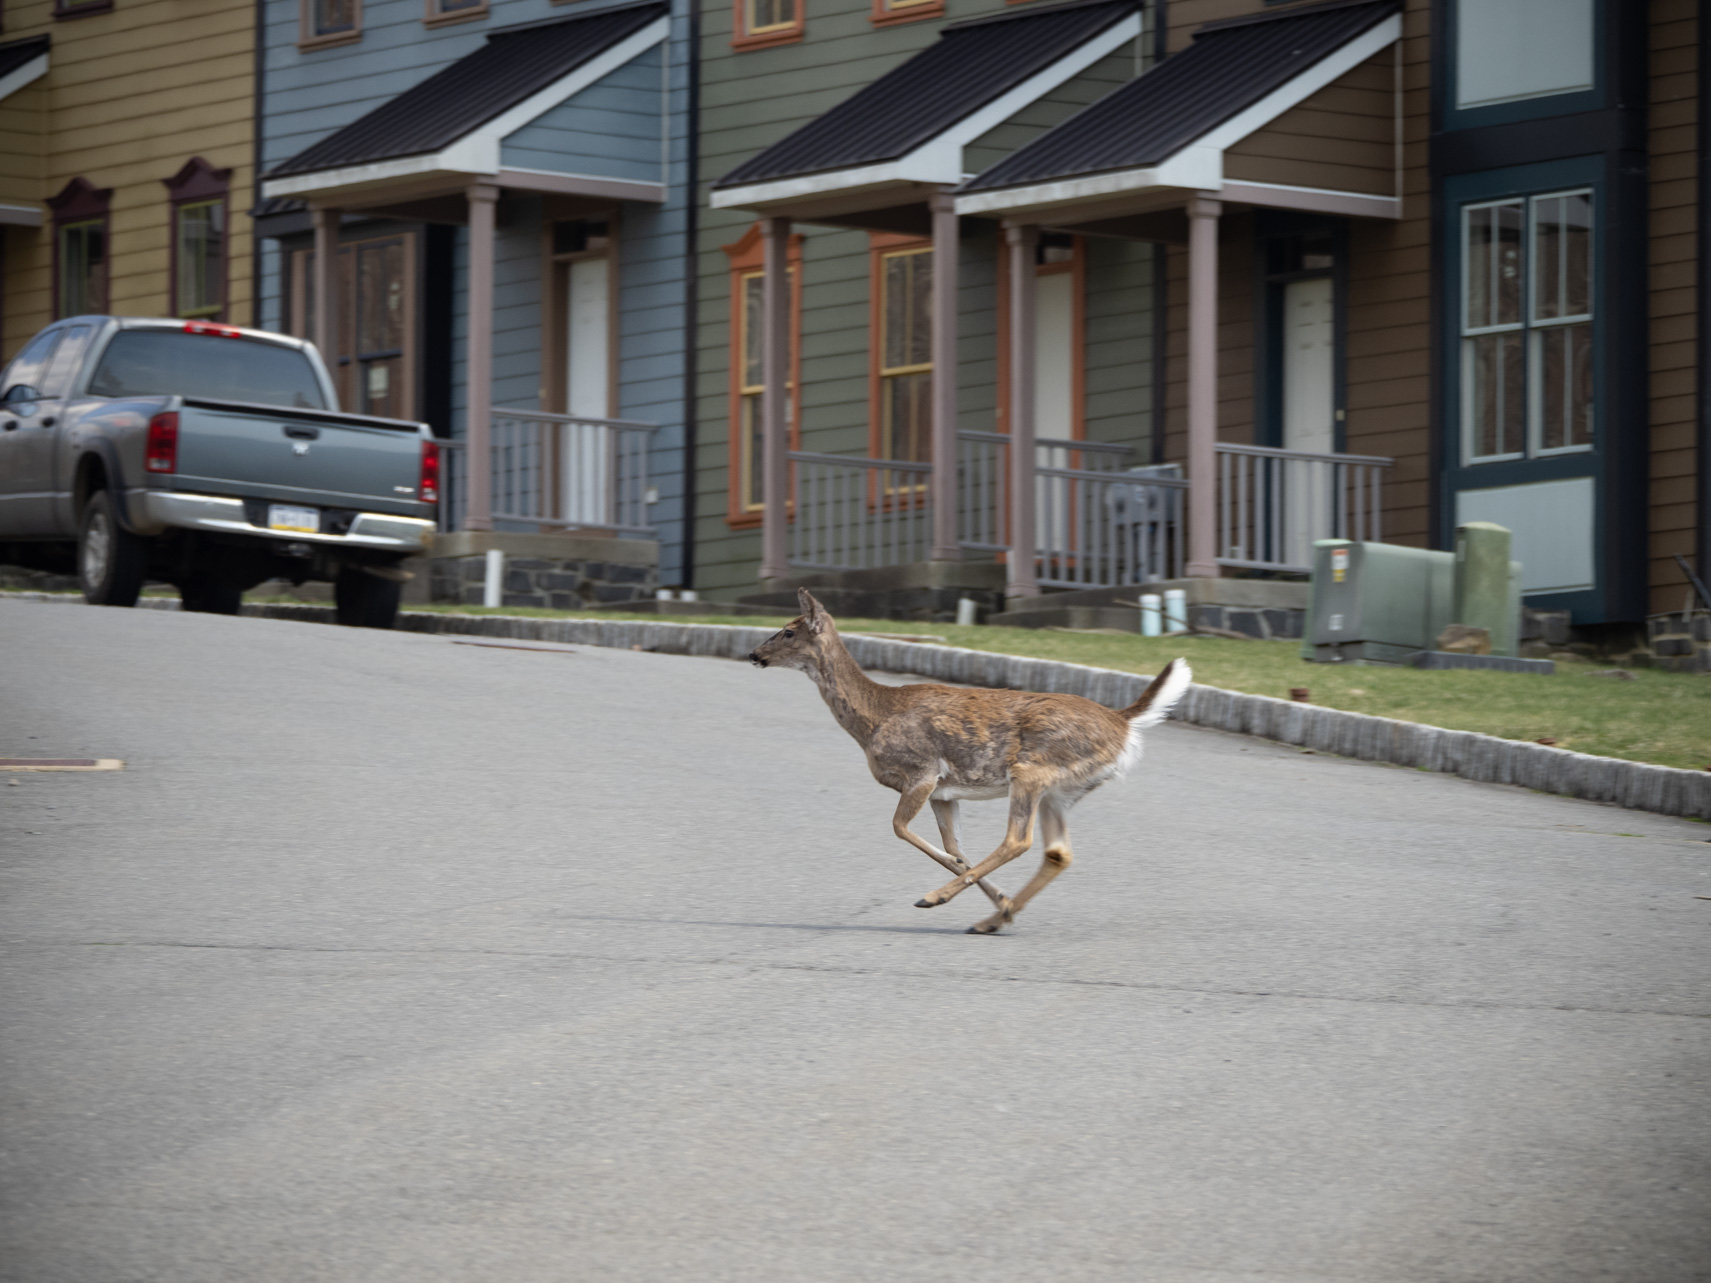 A deer careens through a half-constructed housing development.